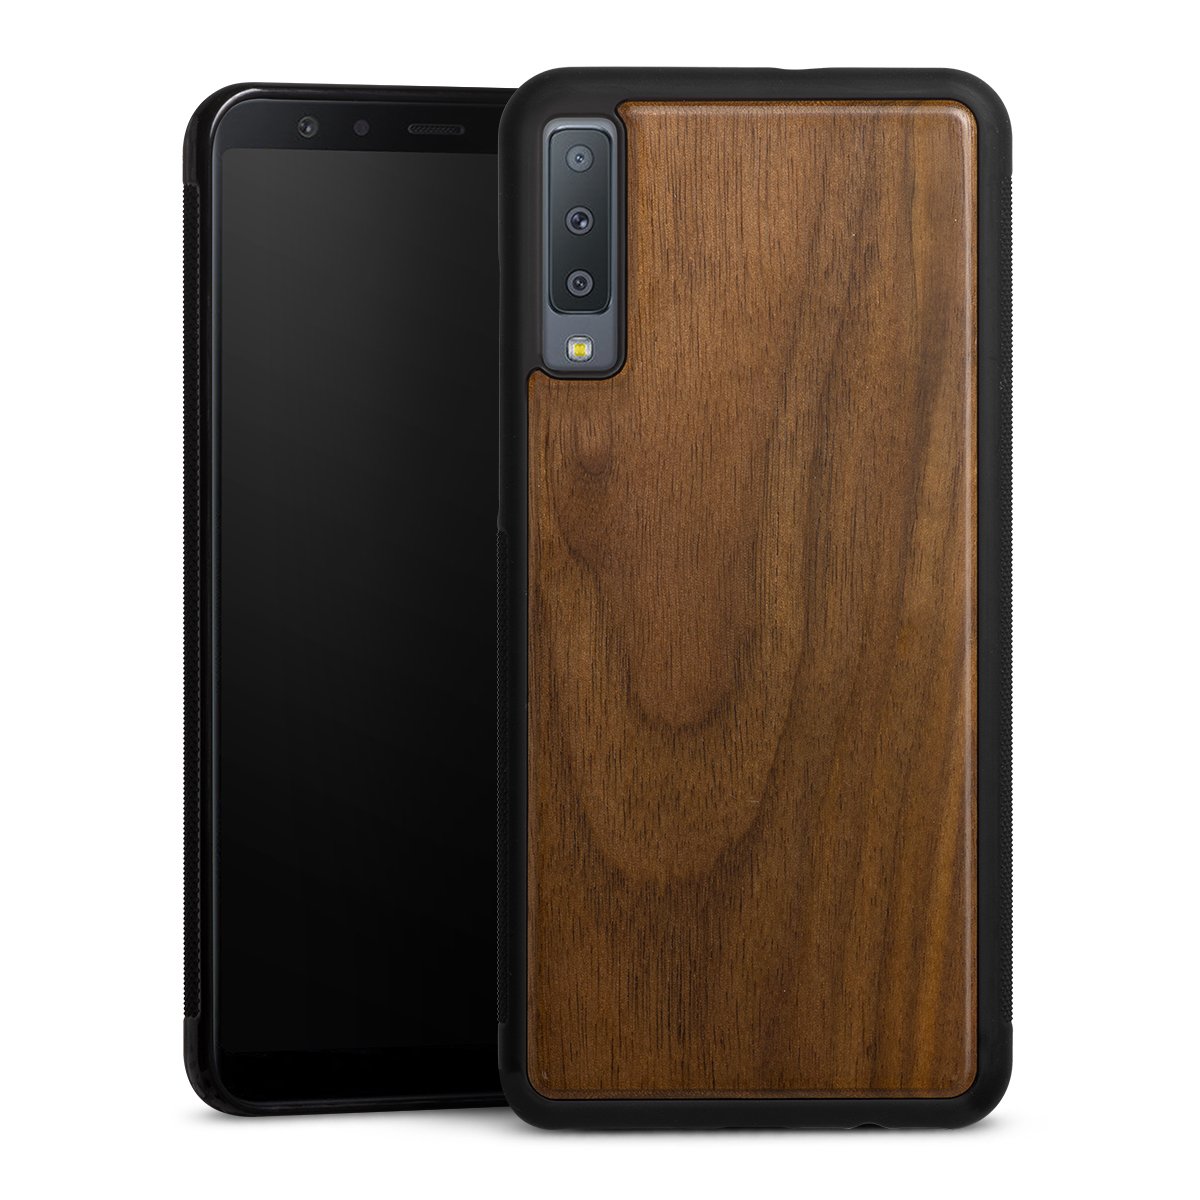 Wooden Hard Case für Samsung Galaxy A7 Duos (2018)